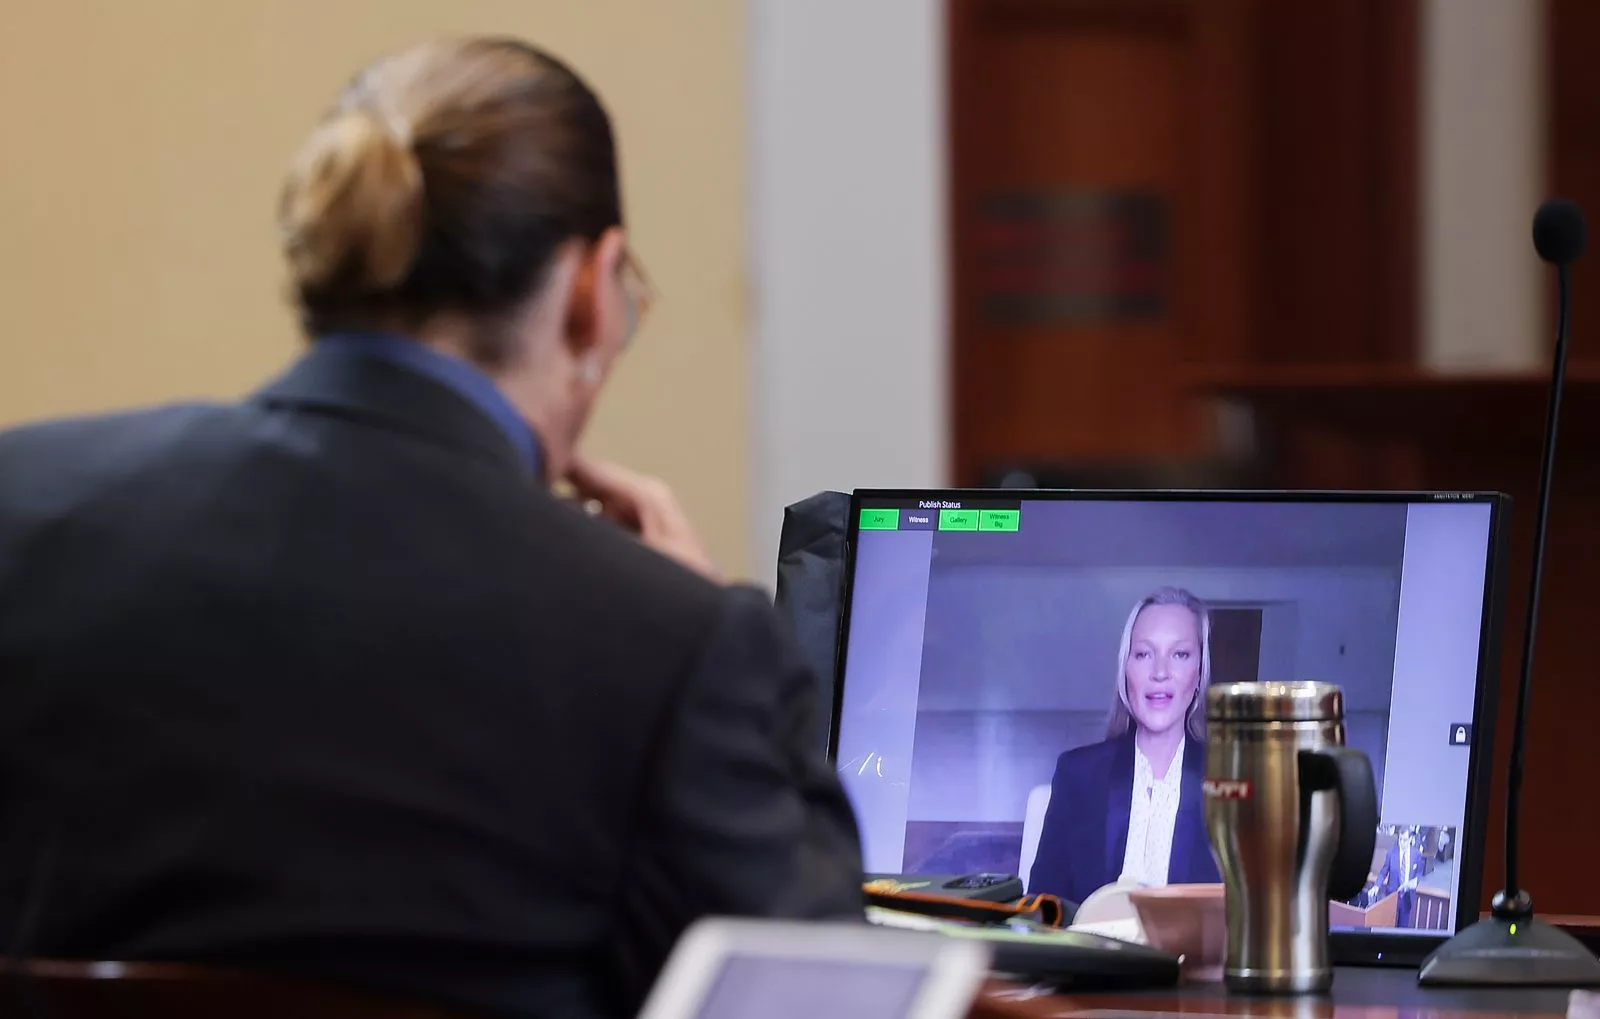 Джонни Депп слушает, как его бывшая девушка, модель Кейт Мосс дает показания по видеосвязи во время судебного процесса Деппа против его бывшей жены Эмбер Херд в окружном суде округа Фэрфакс, 25 мая 2022 г.